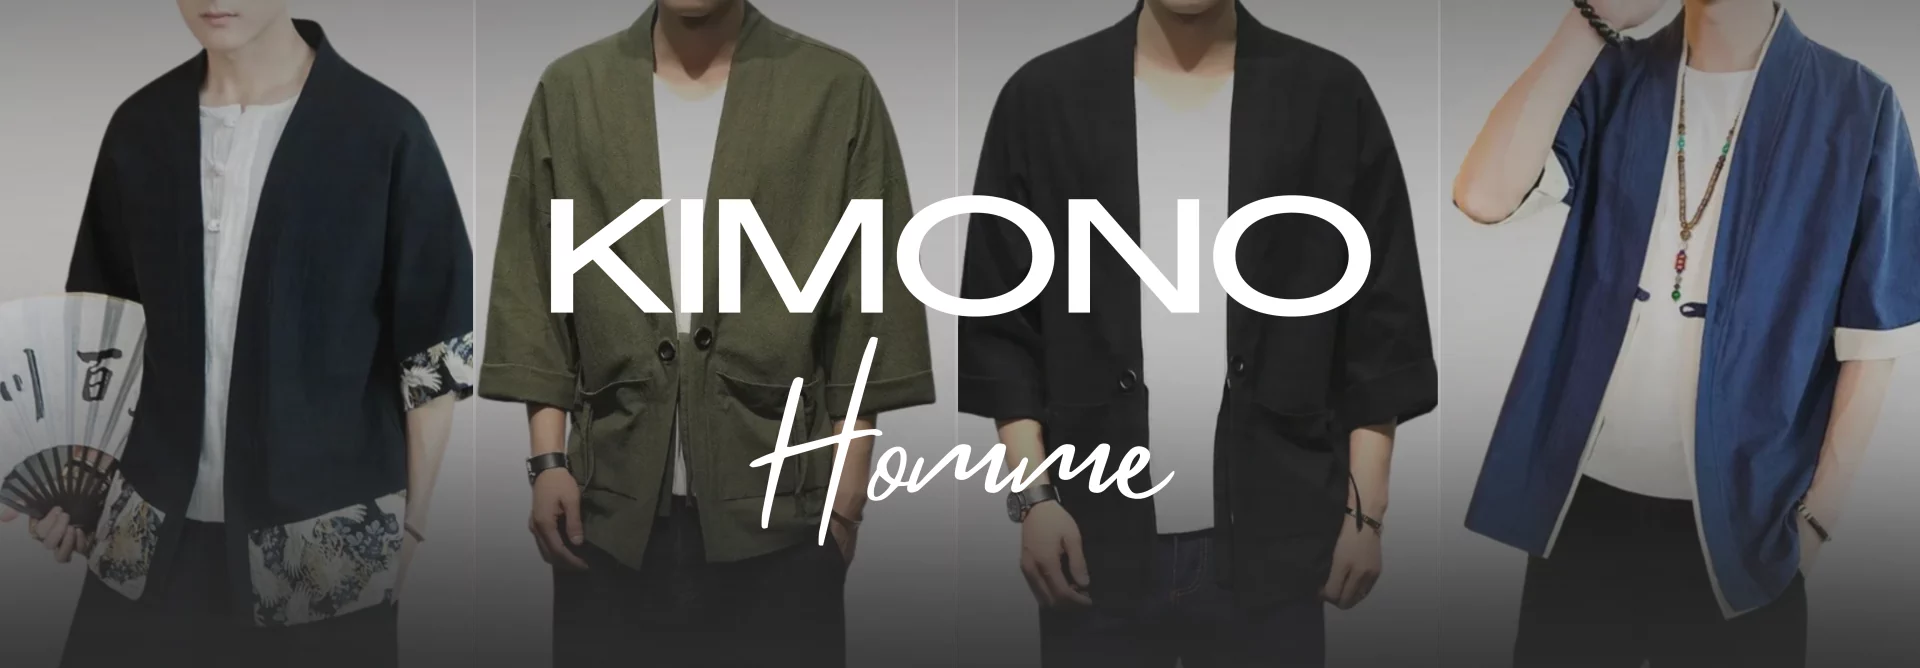 Kimono homme